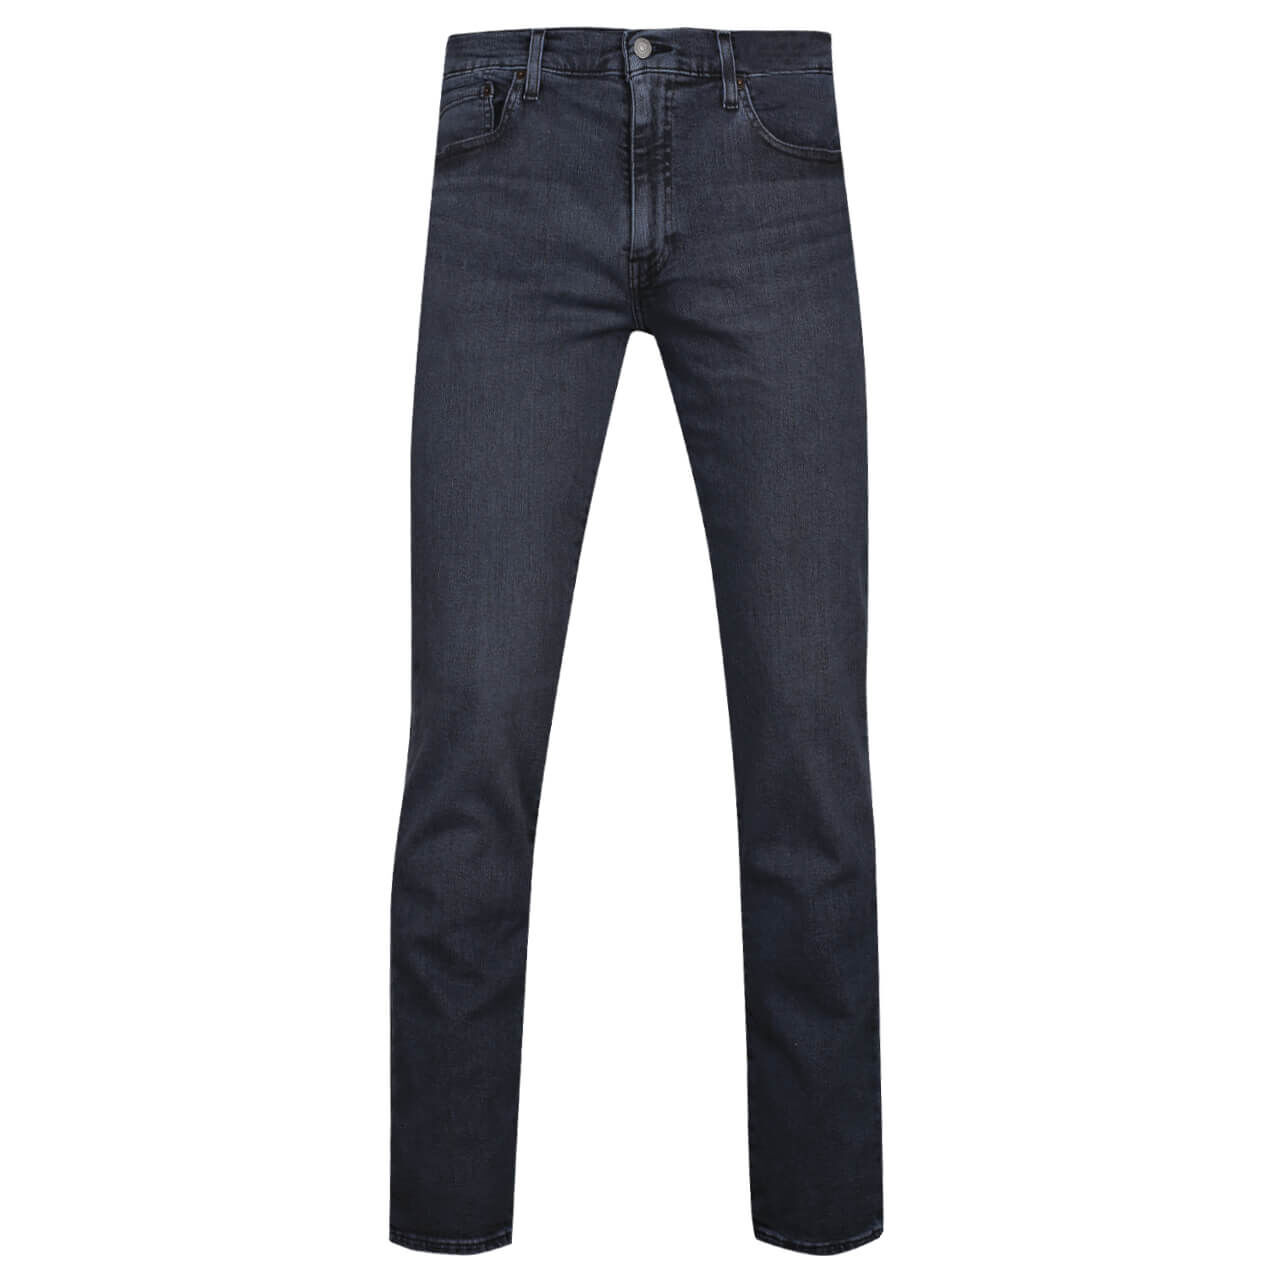 Levi's® Jeans 511 für Herren in Blauschwarz, FarbNr.: 4759